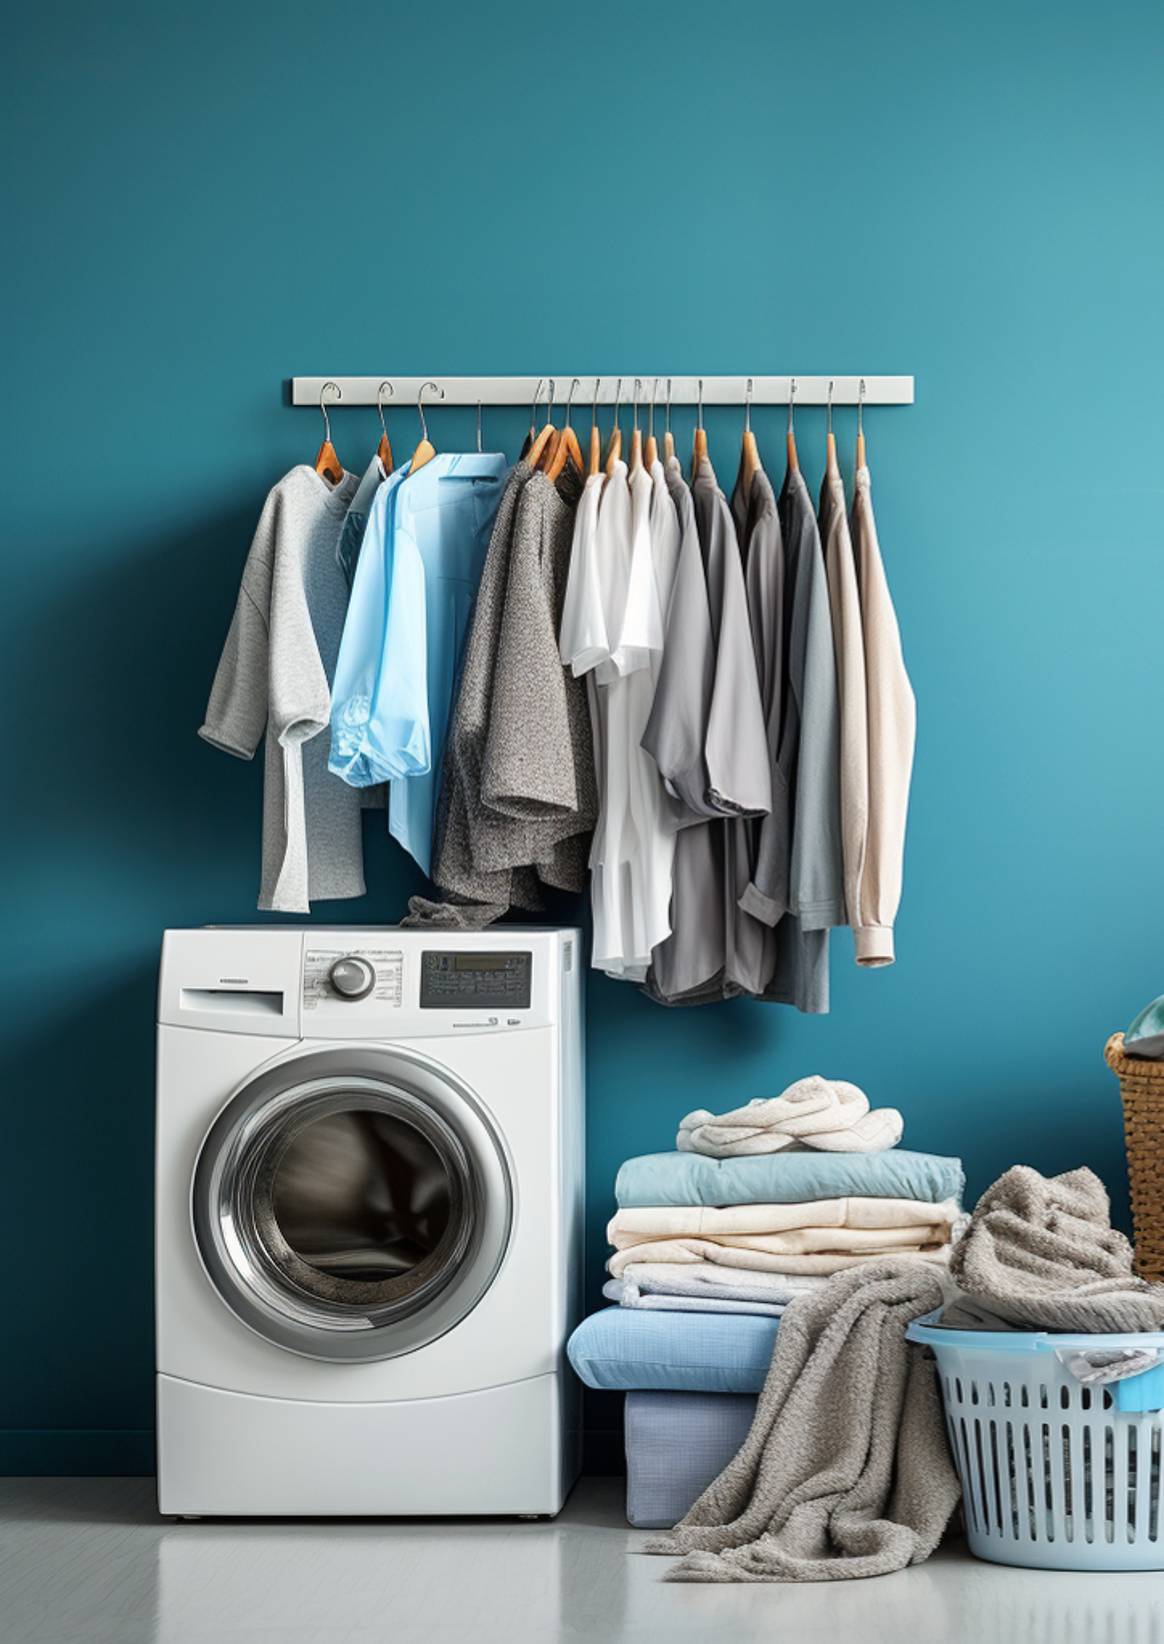 Dit beeld is gemaakt met behulp van kunstmatige intelligentie (een AI tool) ter illustratie van microplastics die vrijkomen bij het wassen van onze kleding.